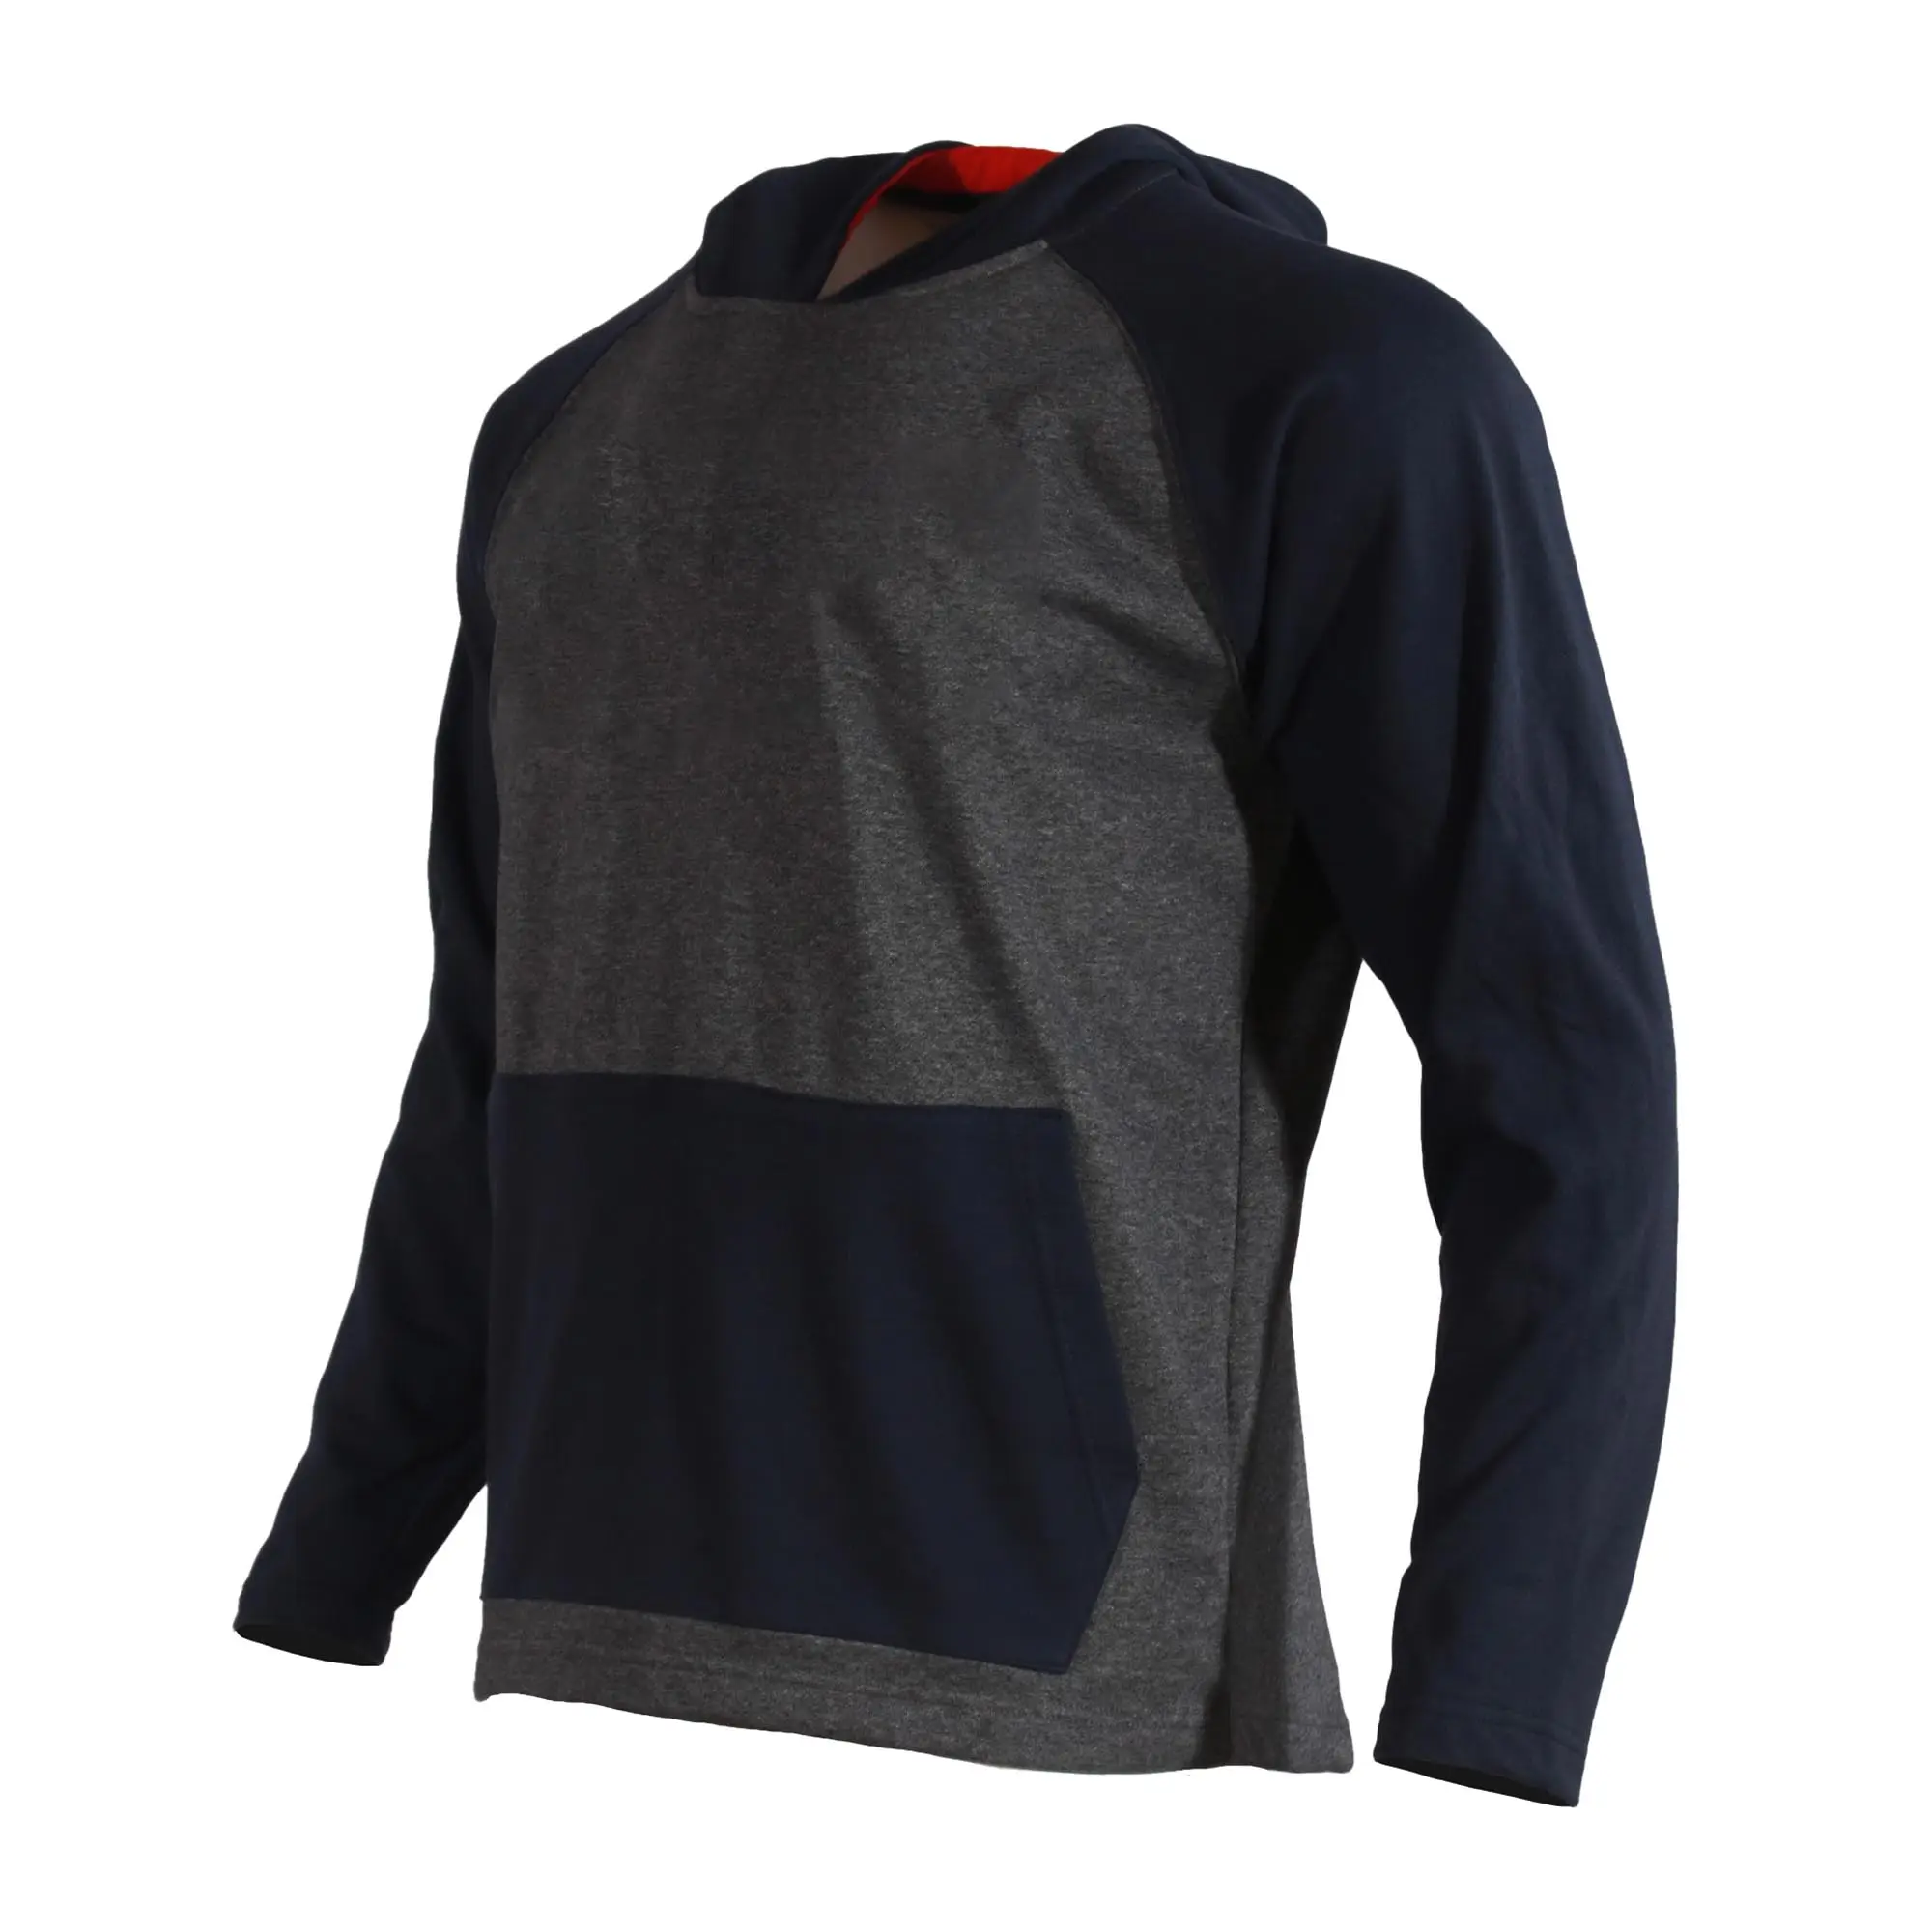 2023 индивидуальная толстовка с вышитым логотипом, американский футбол, Мужской пуловер с декольте, свитер